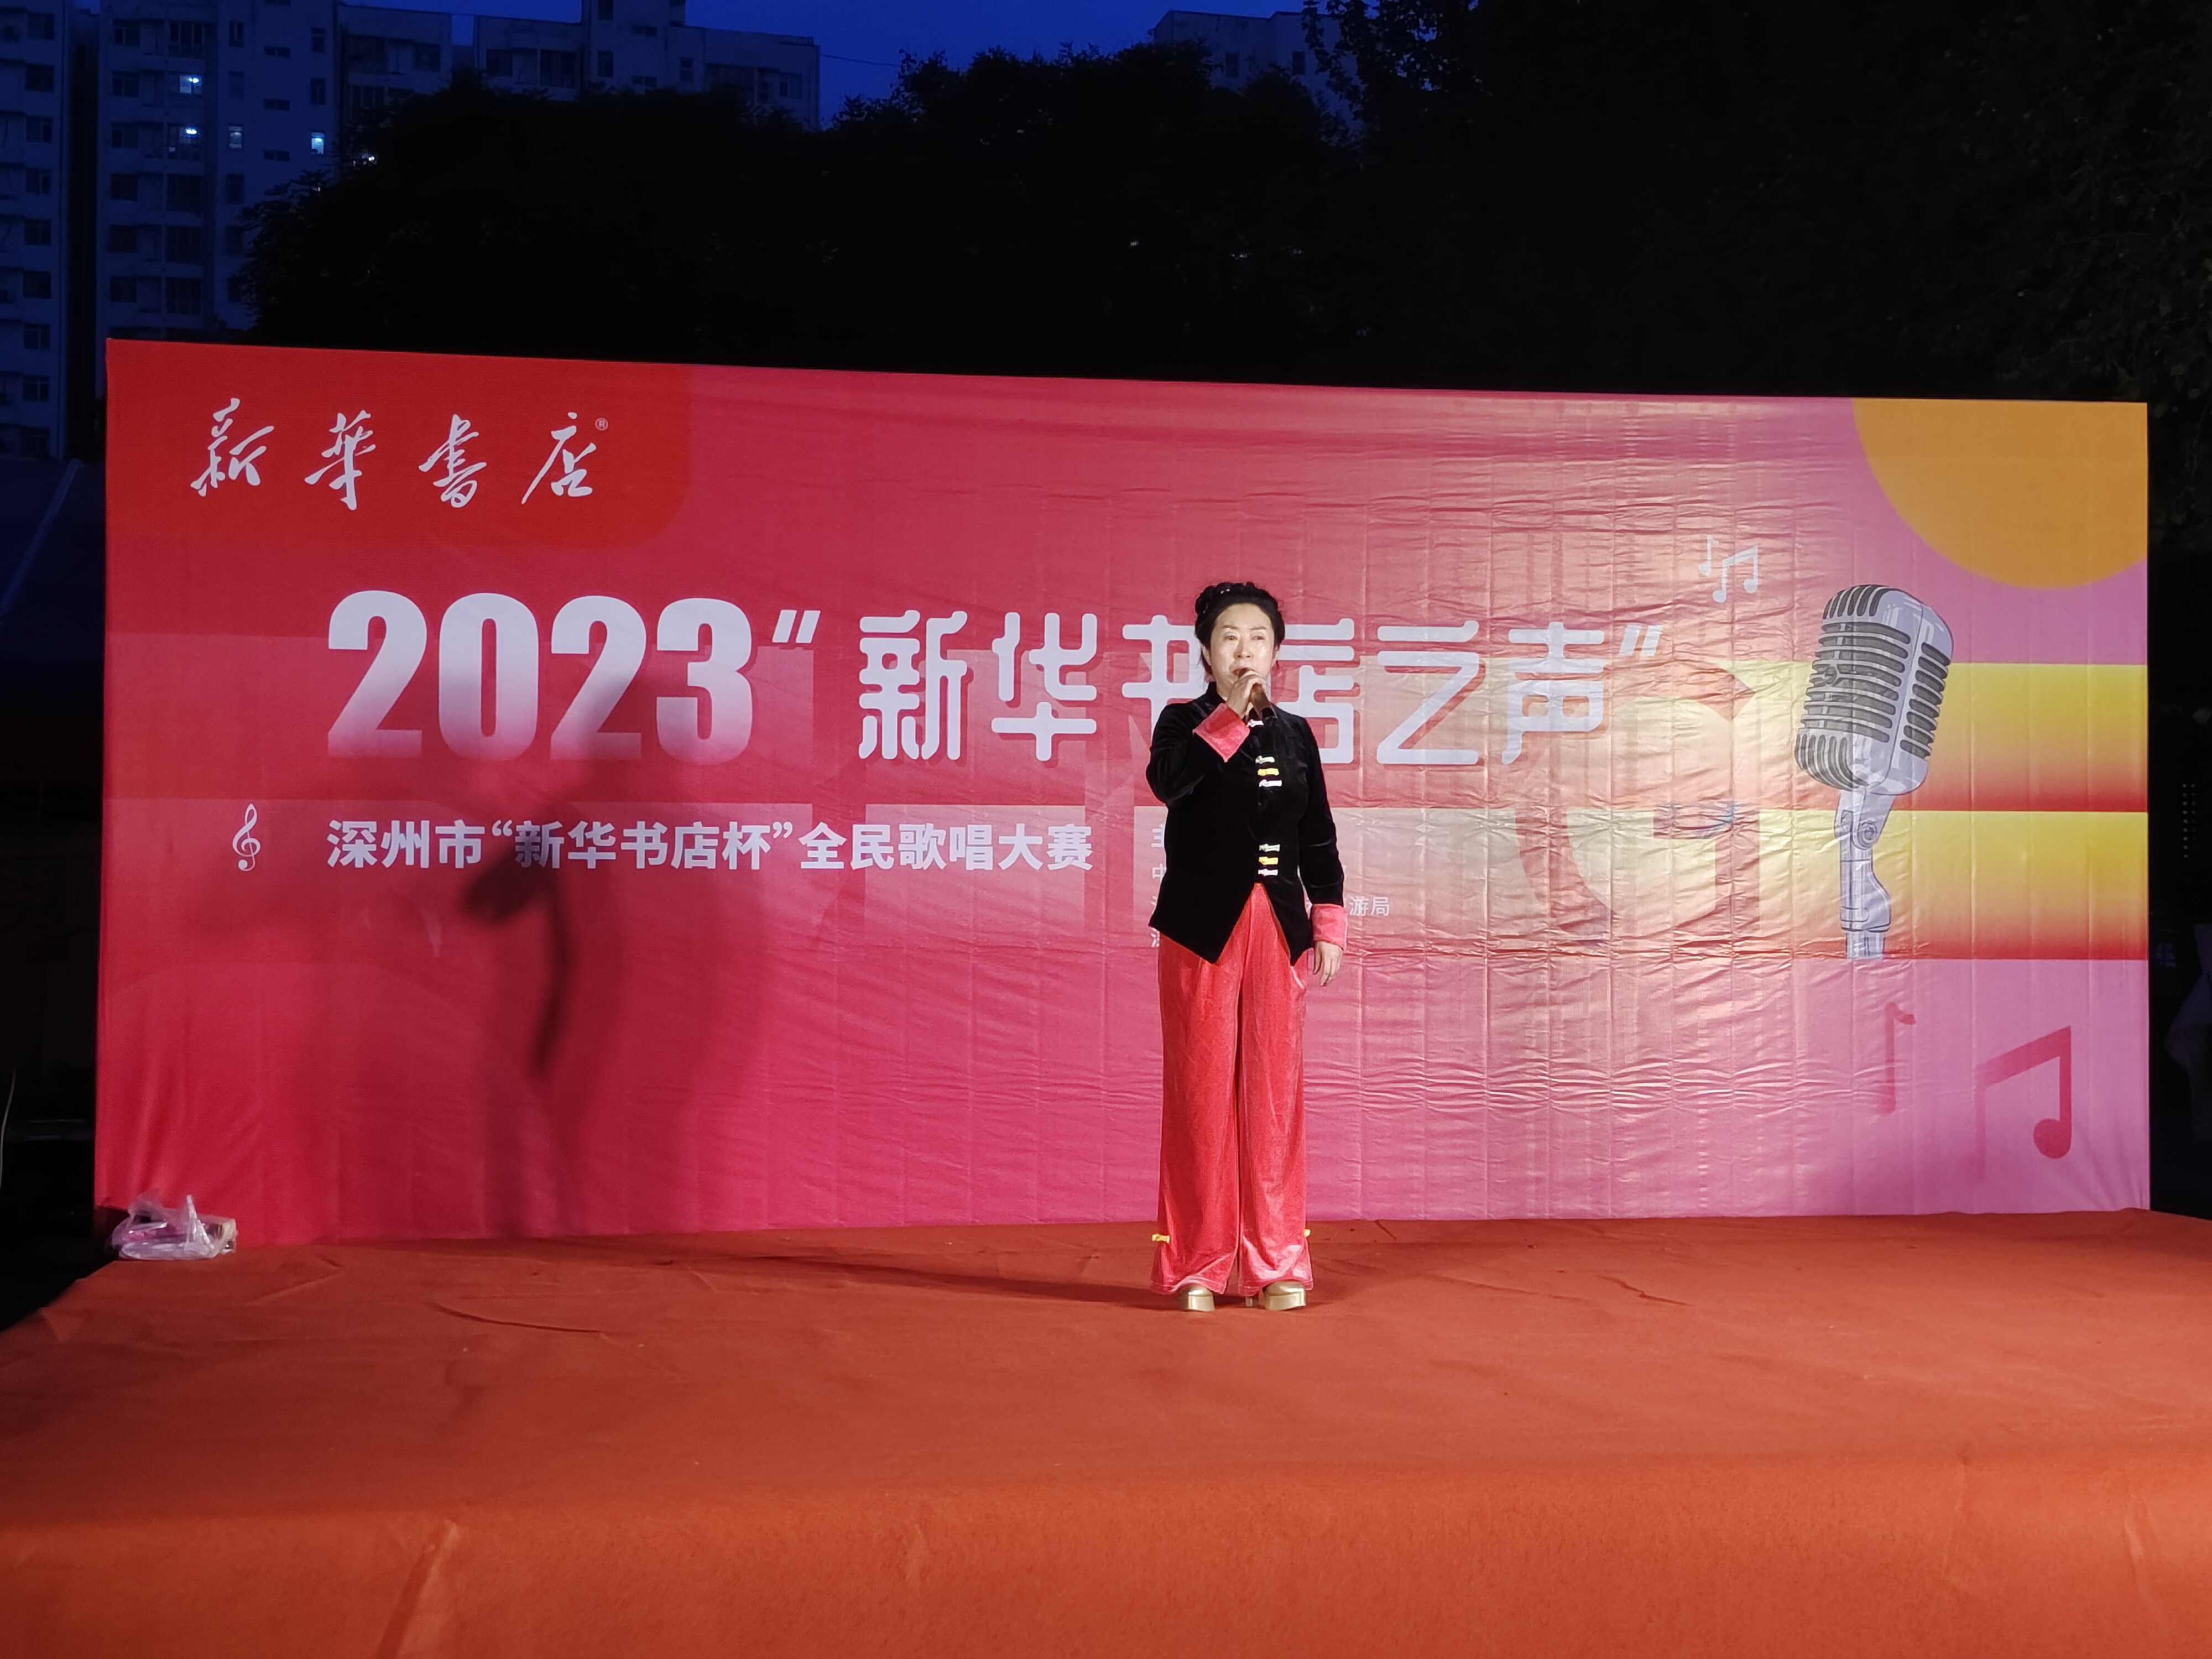 2022023“新华书店之声”全民歌唱大赛初赛第二场书香节现场激情开唱